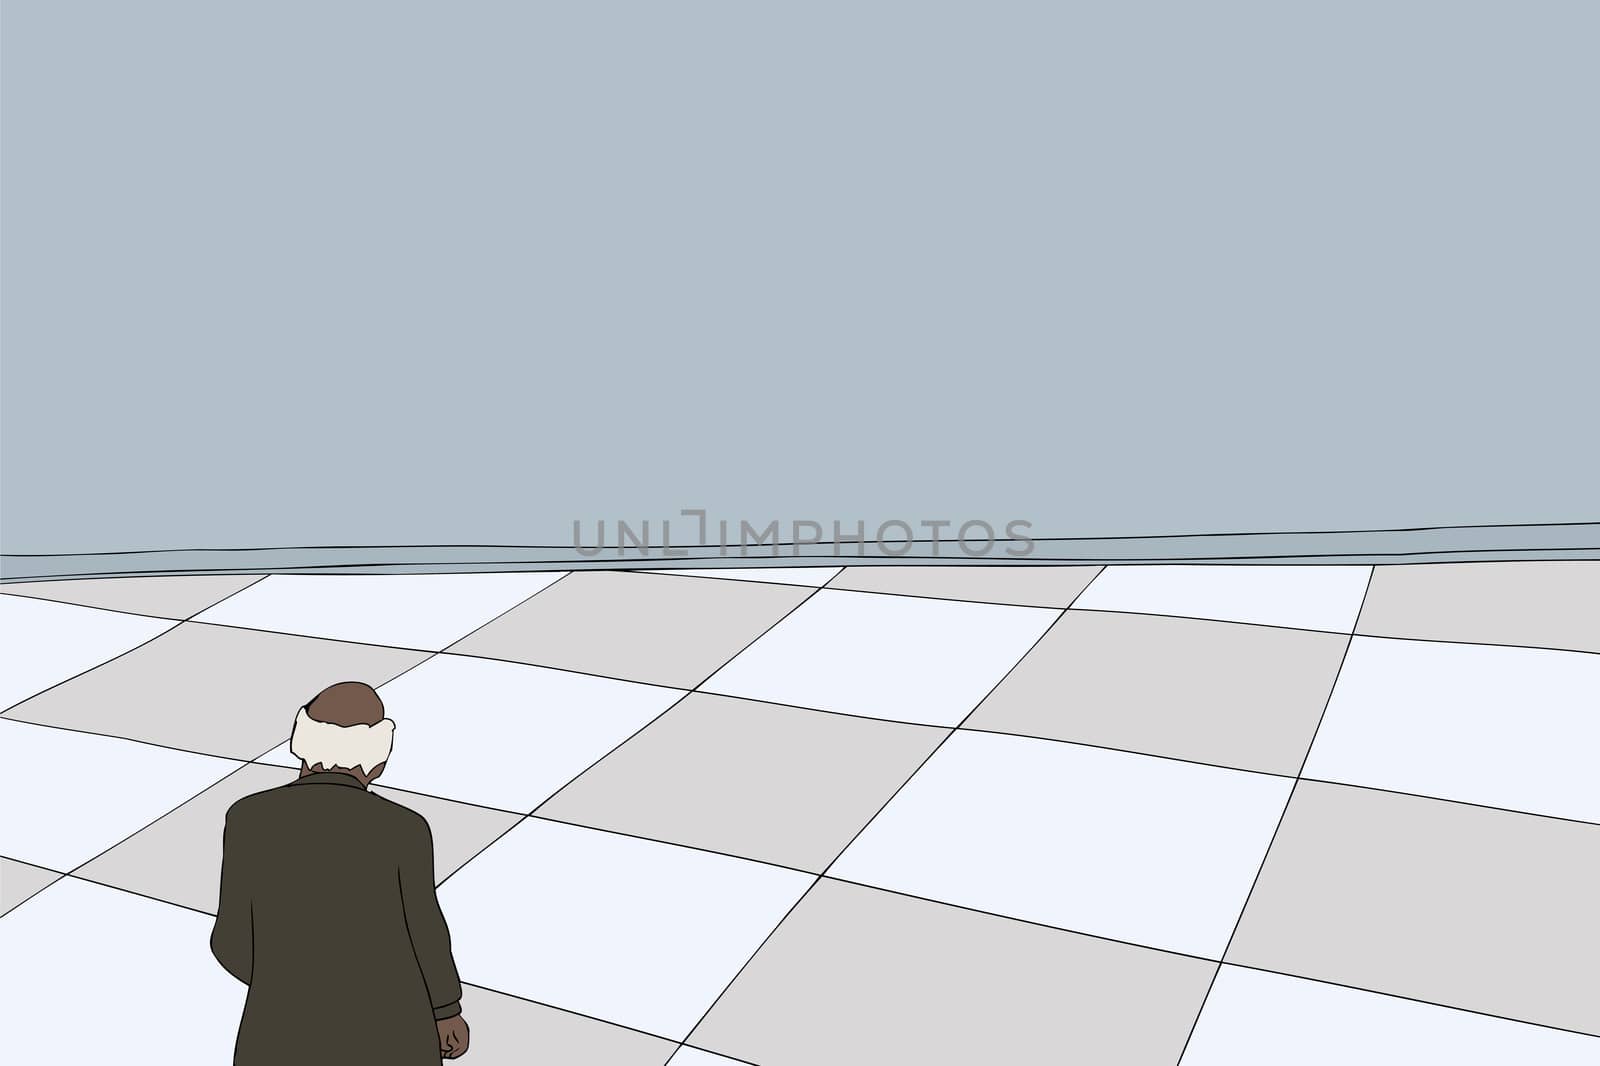 Background cartoon of balding businessman looking over floor